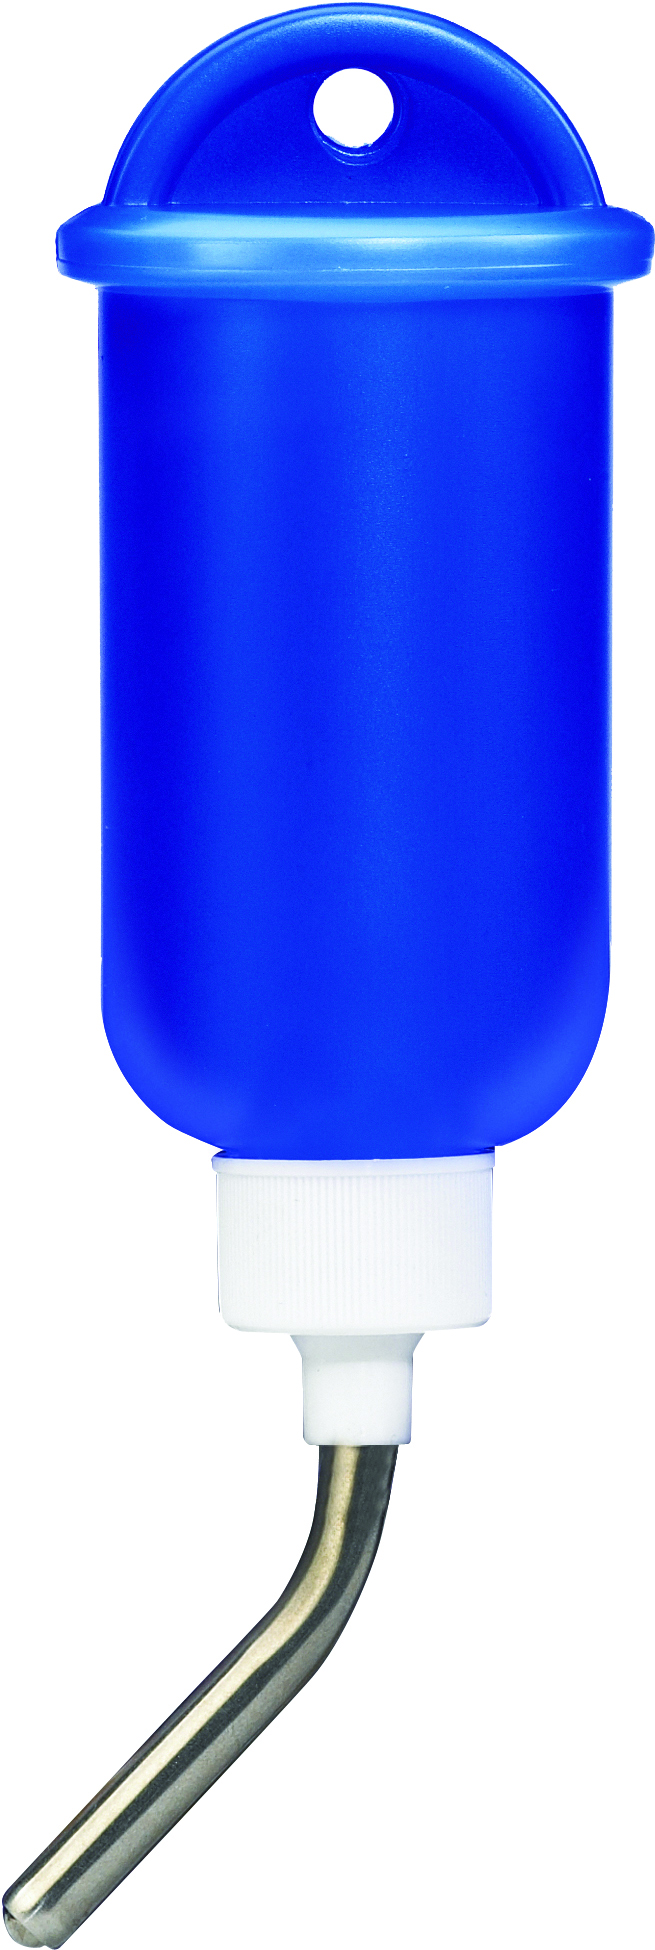 Crittertrail Water Bottle - 5 Oz